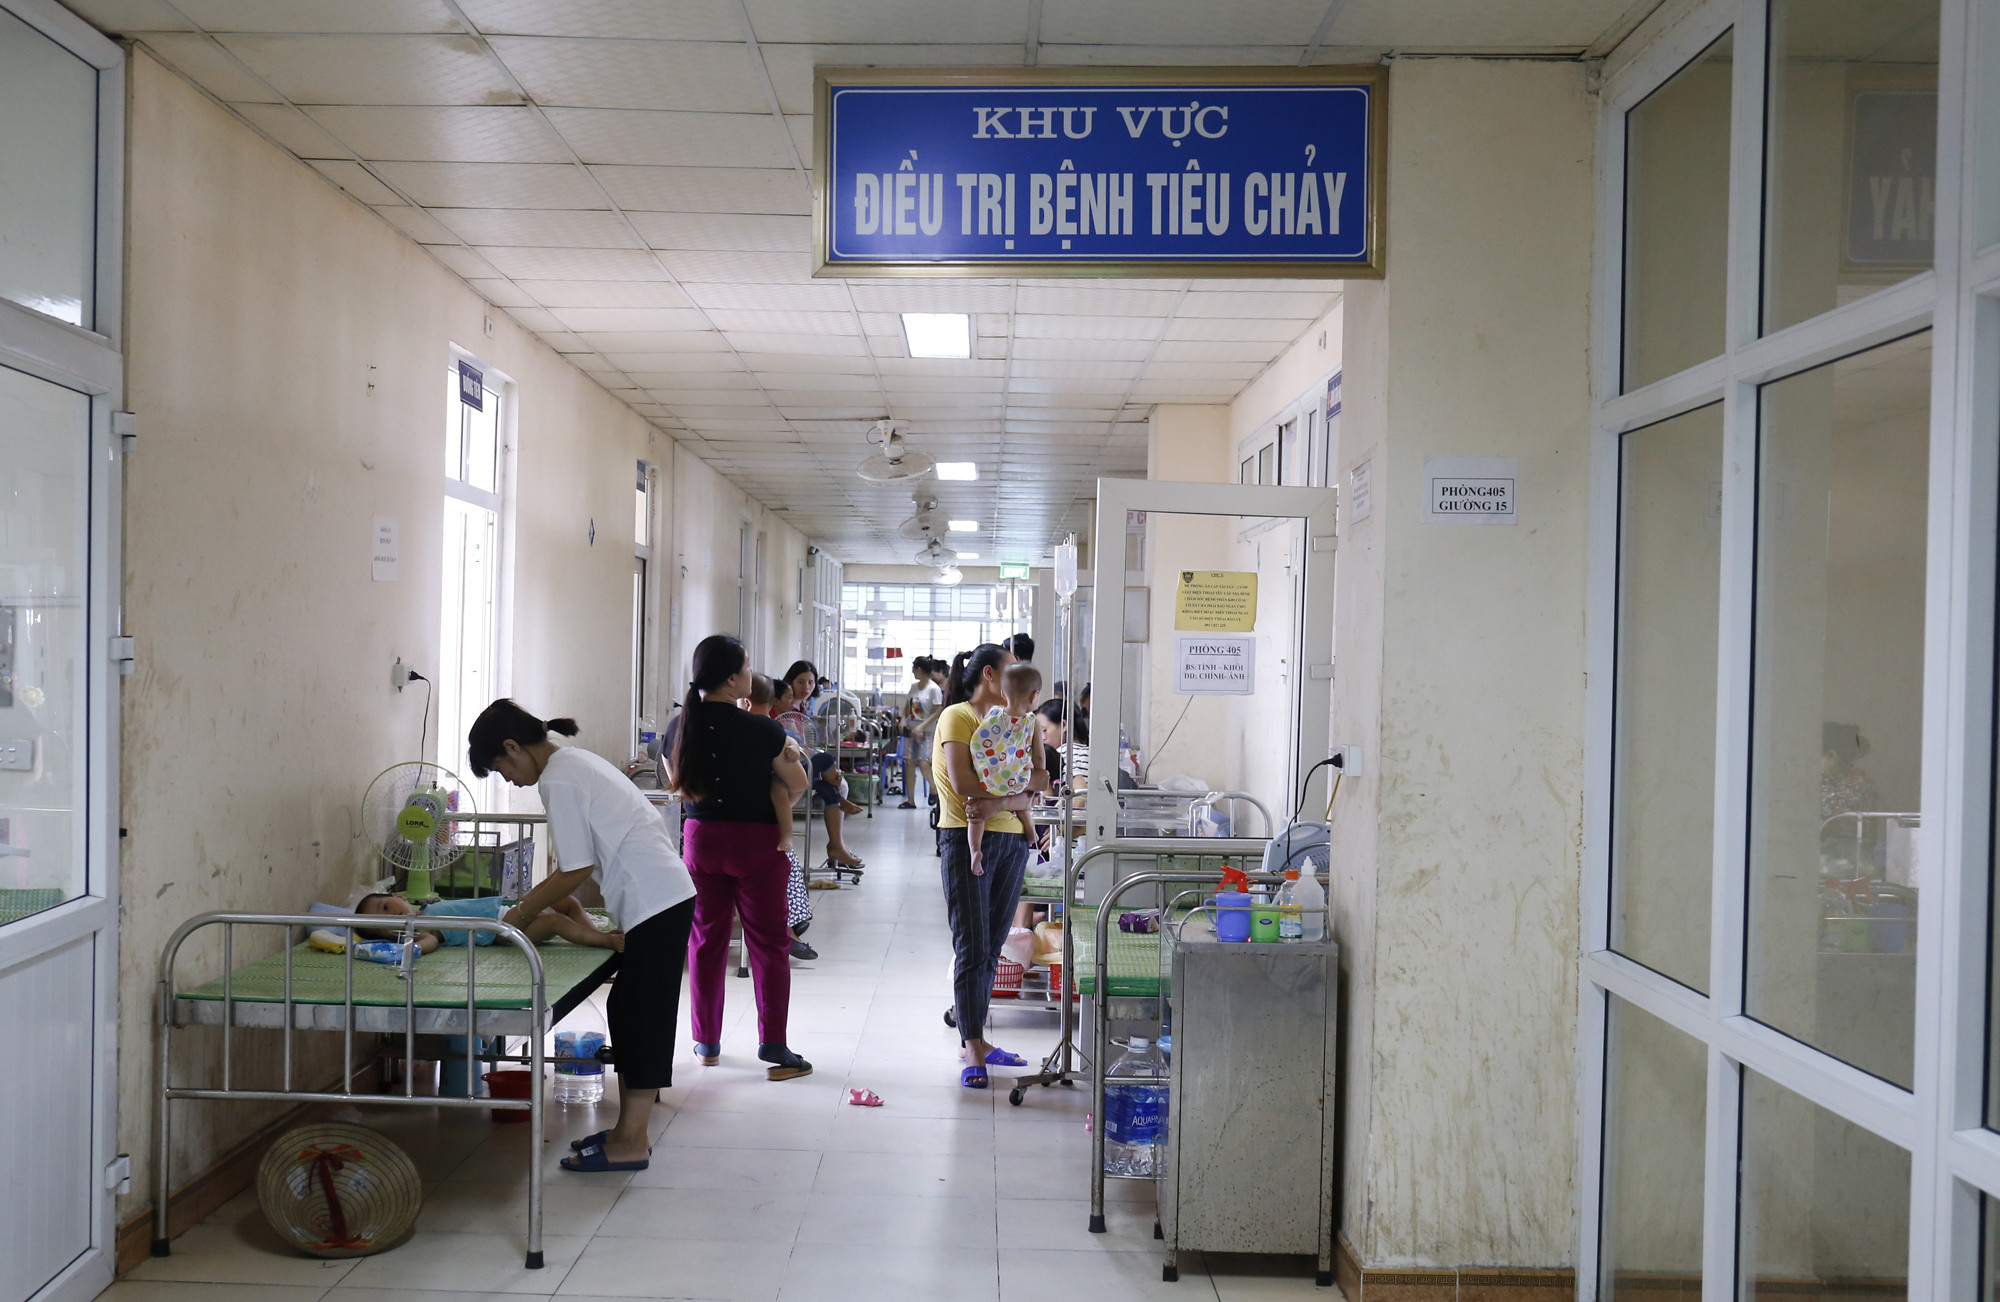 Hiện nay, Bệnh viện Sản Nhi đang điều trị nội trú cho 1.133 bệnh nhân. Riêng khoa tiêu hóa là 120 bệnh nhân. Các giường bệnh kê thêm đều đã kín chỗ. Ảnh: Đức Anh